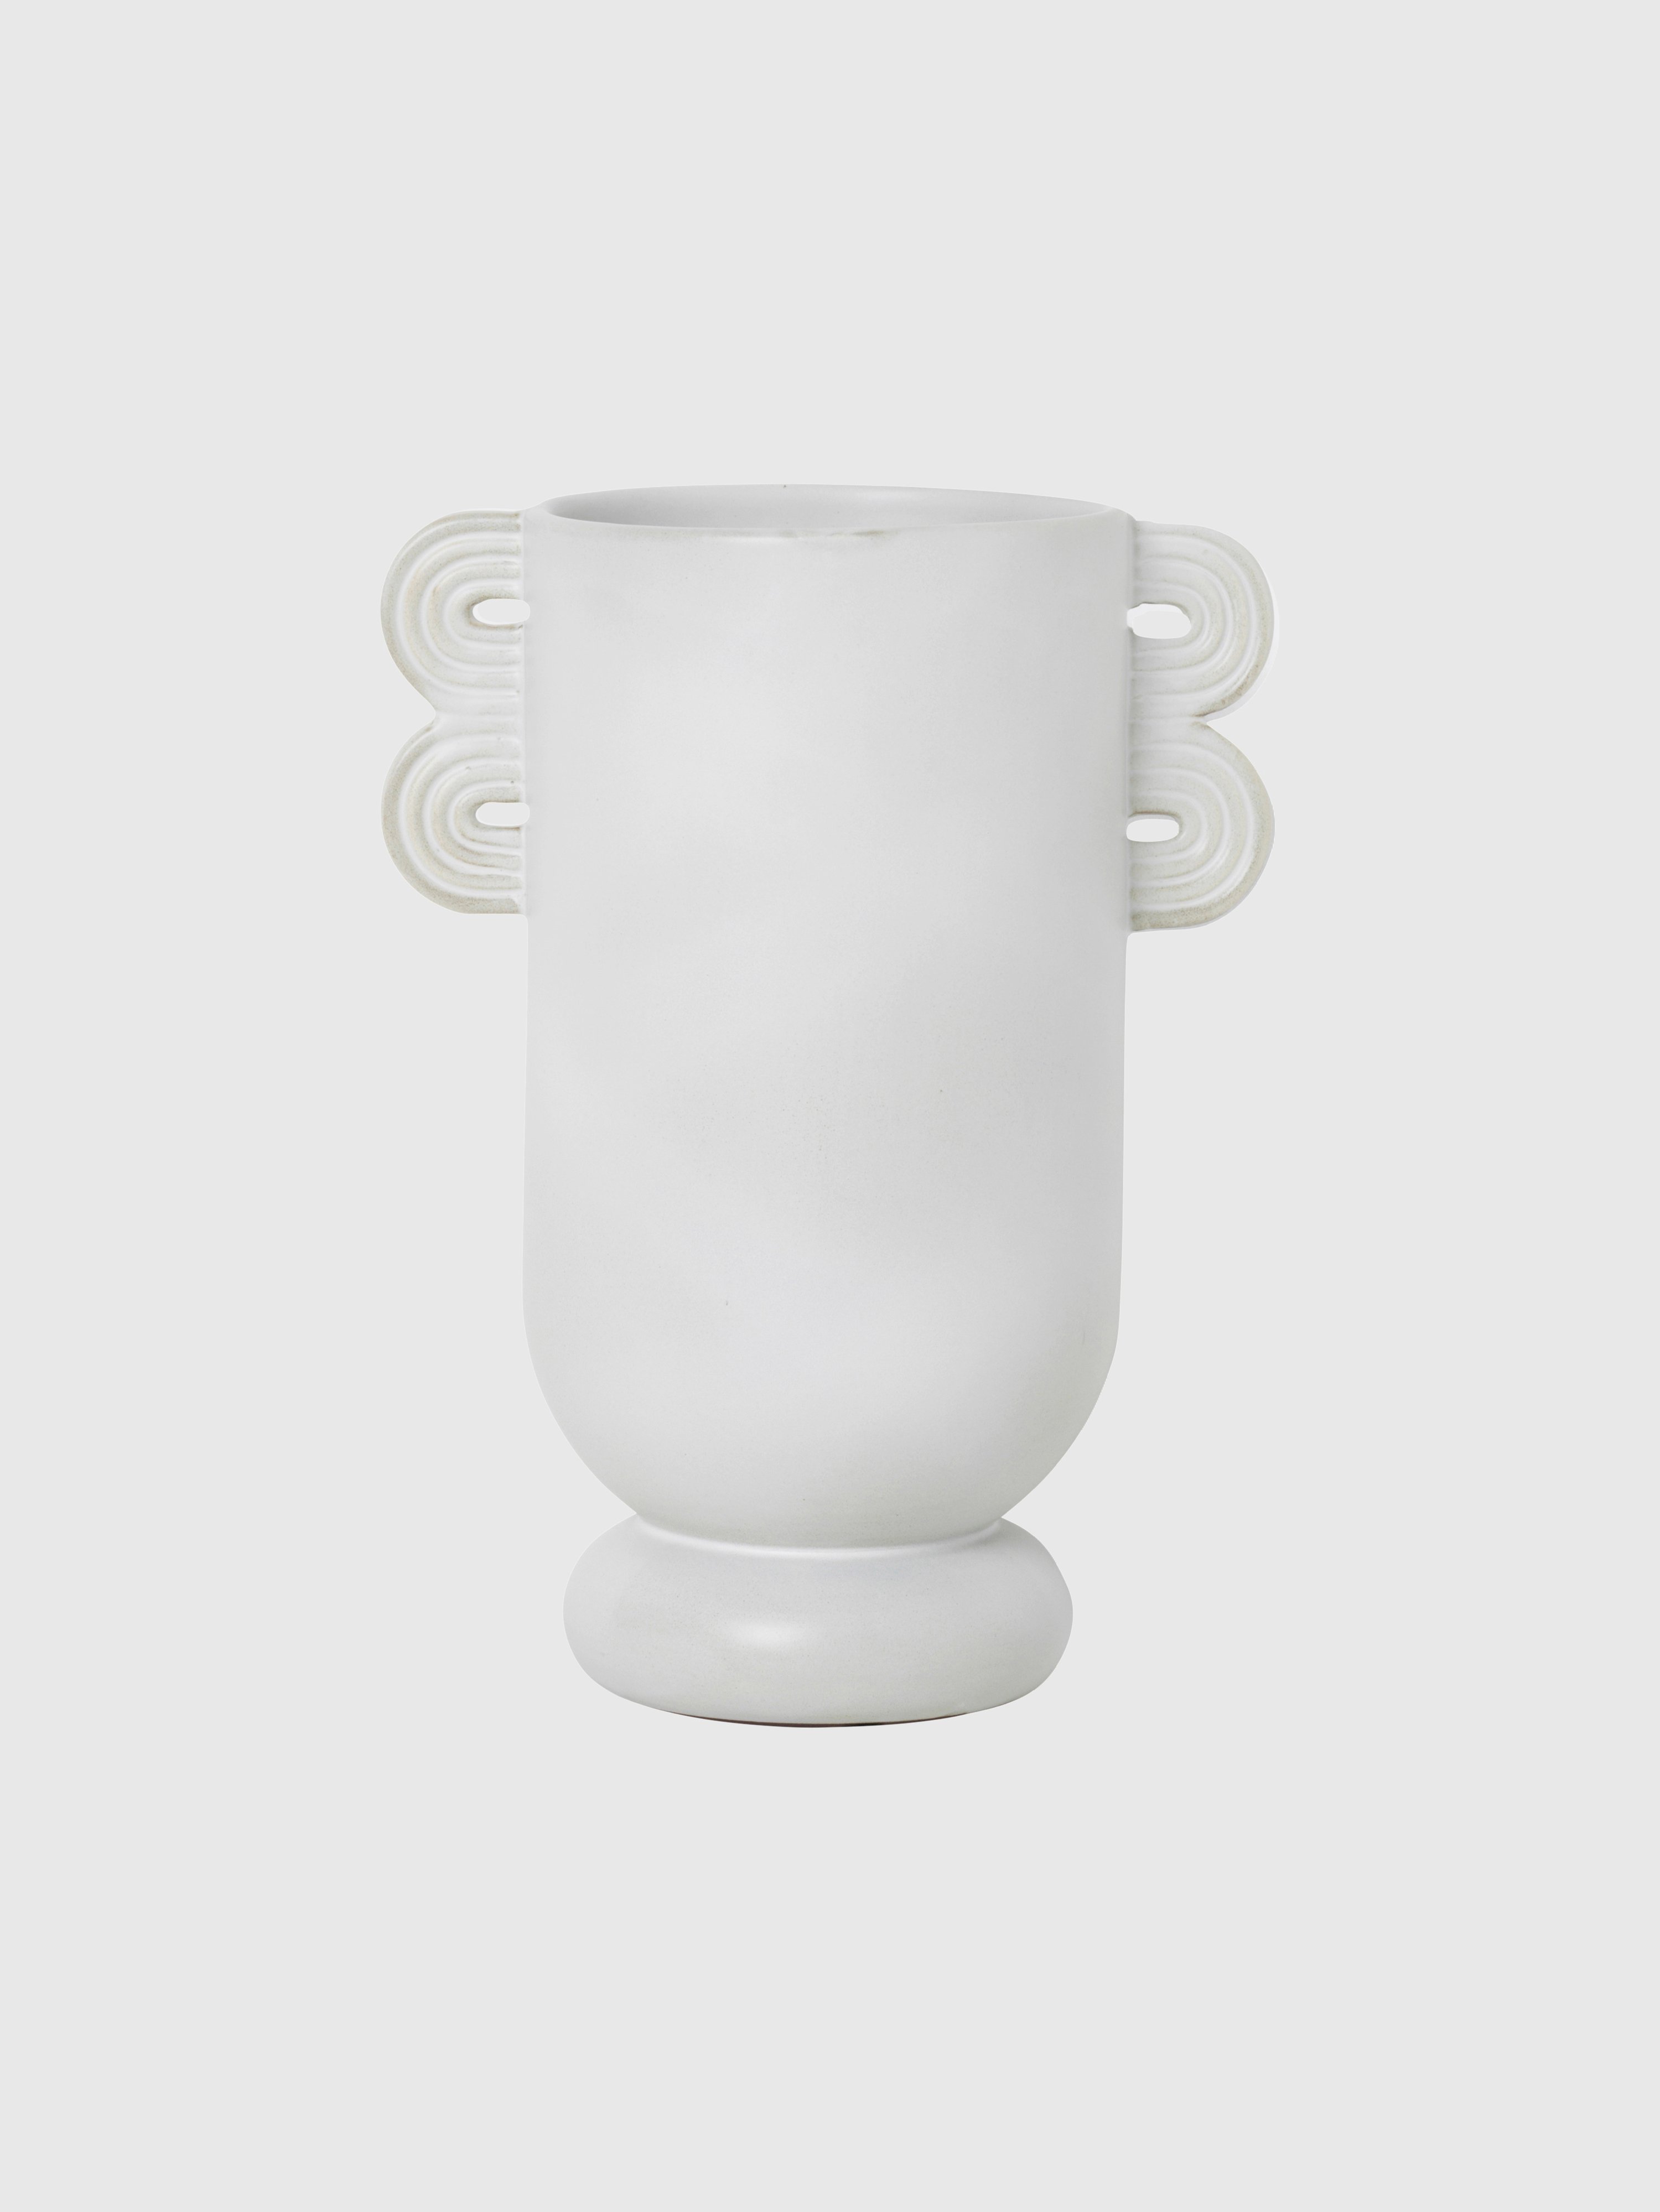 Ferm Living Ania Muses Vase In Cream